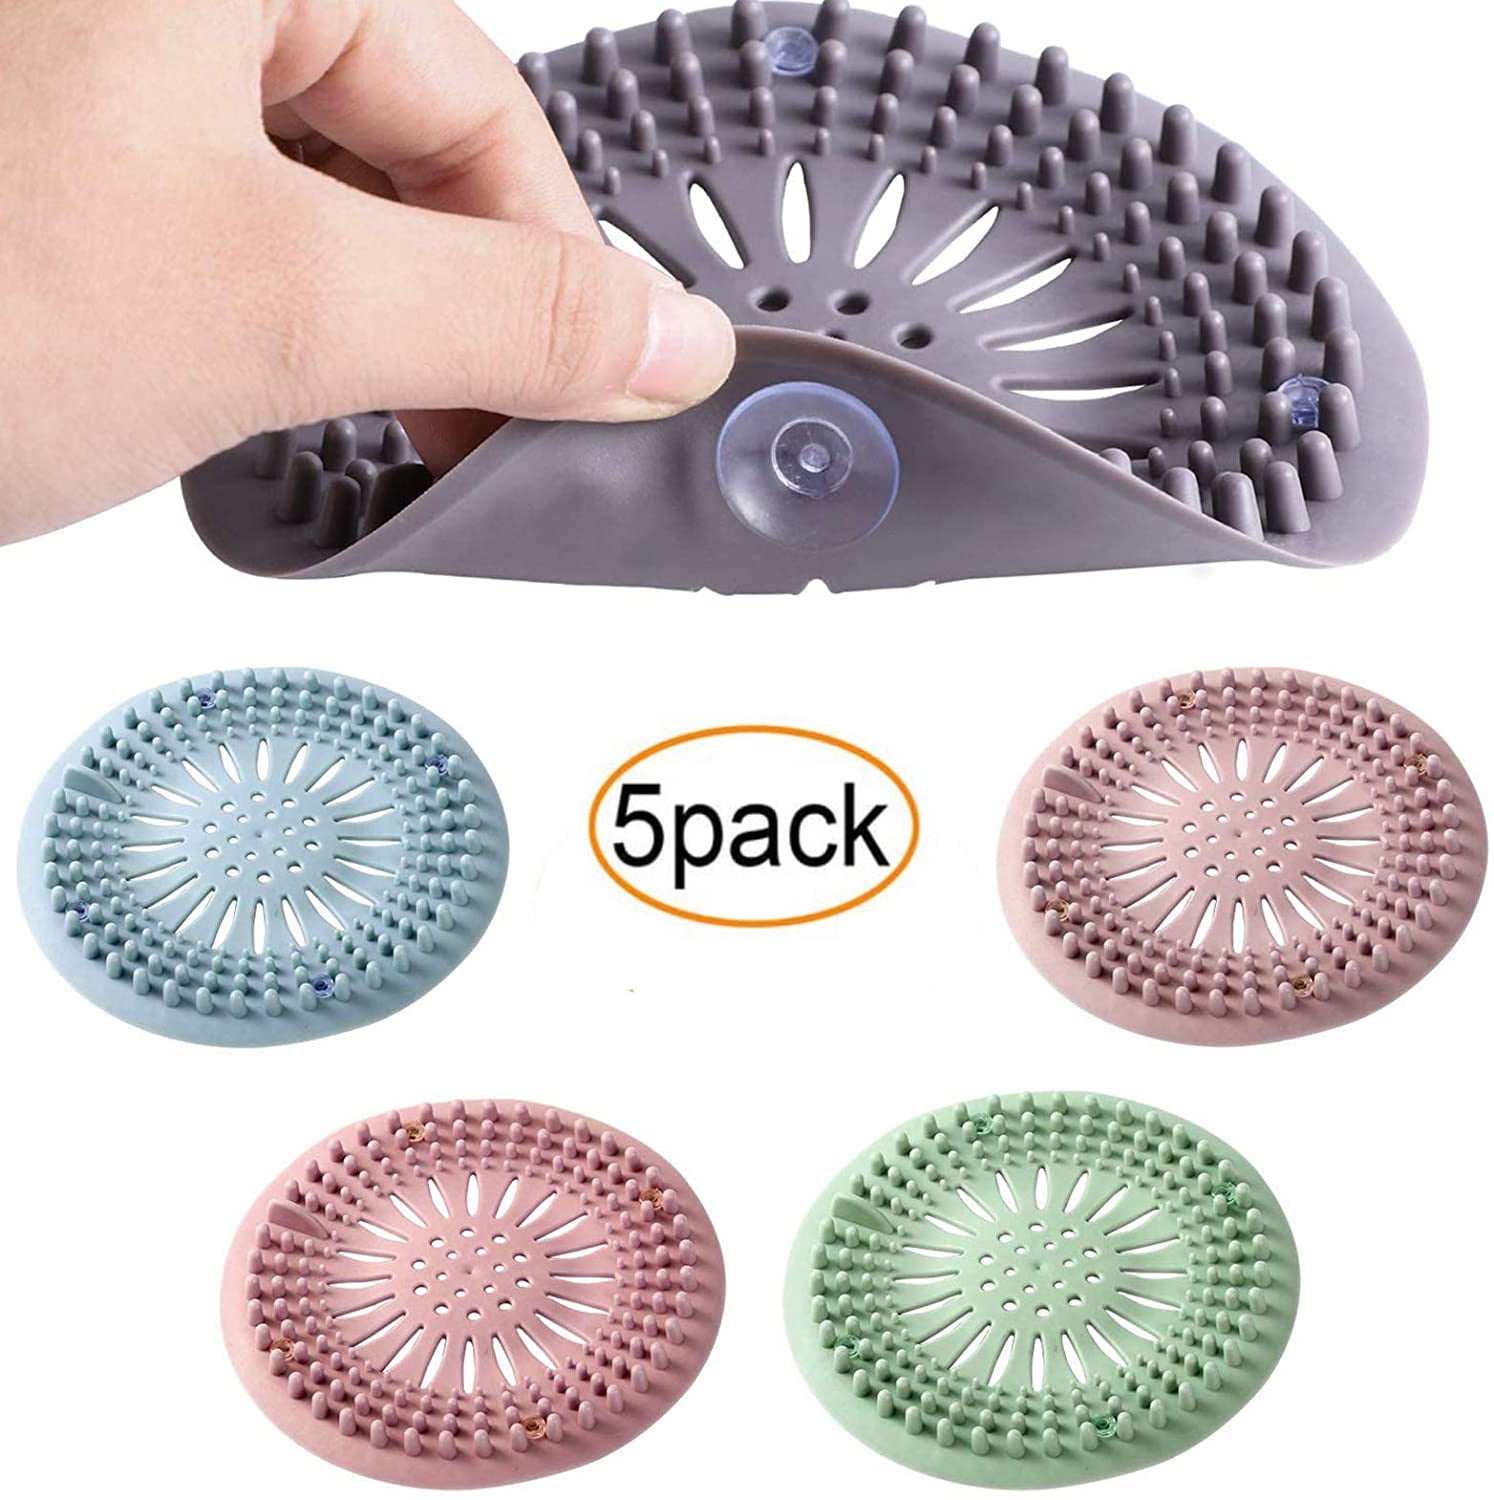 5 Pack Silicone Kitchen Bathroom Sink Shower Hair Catcher Strainer Drain Stopper 